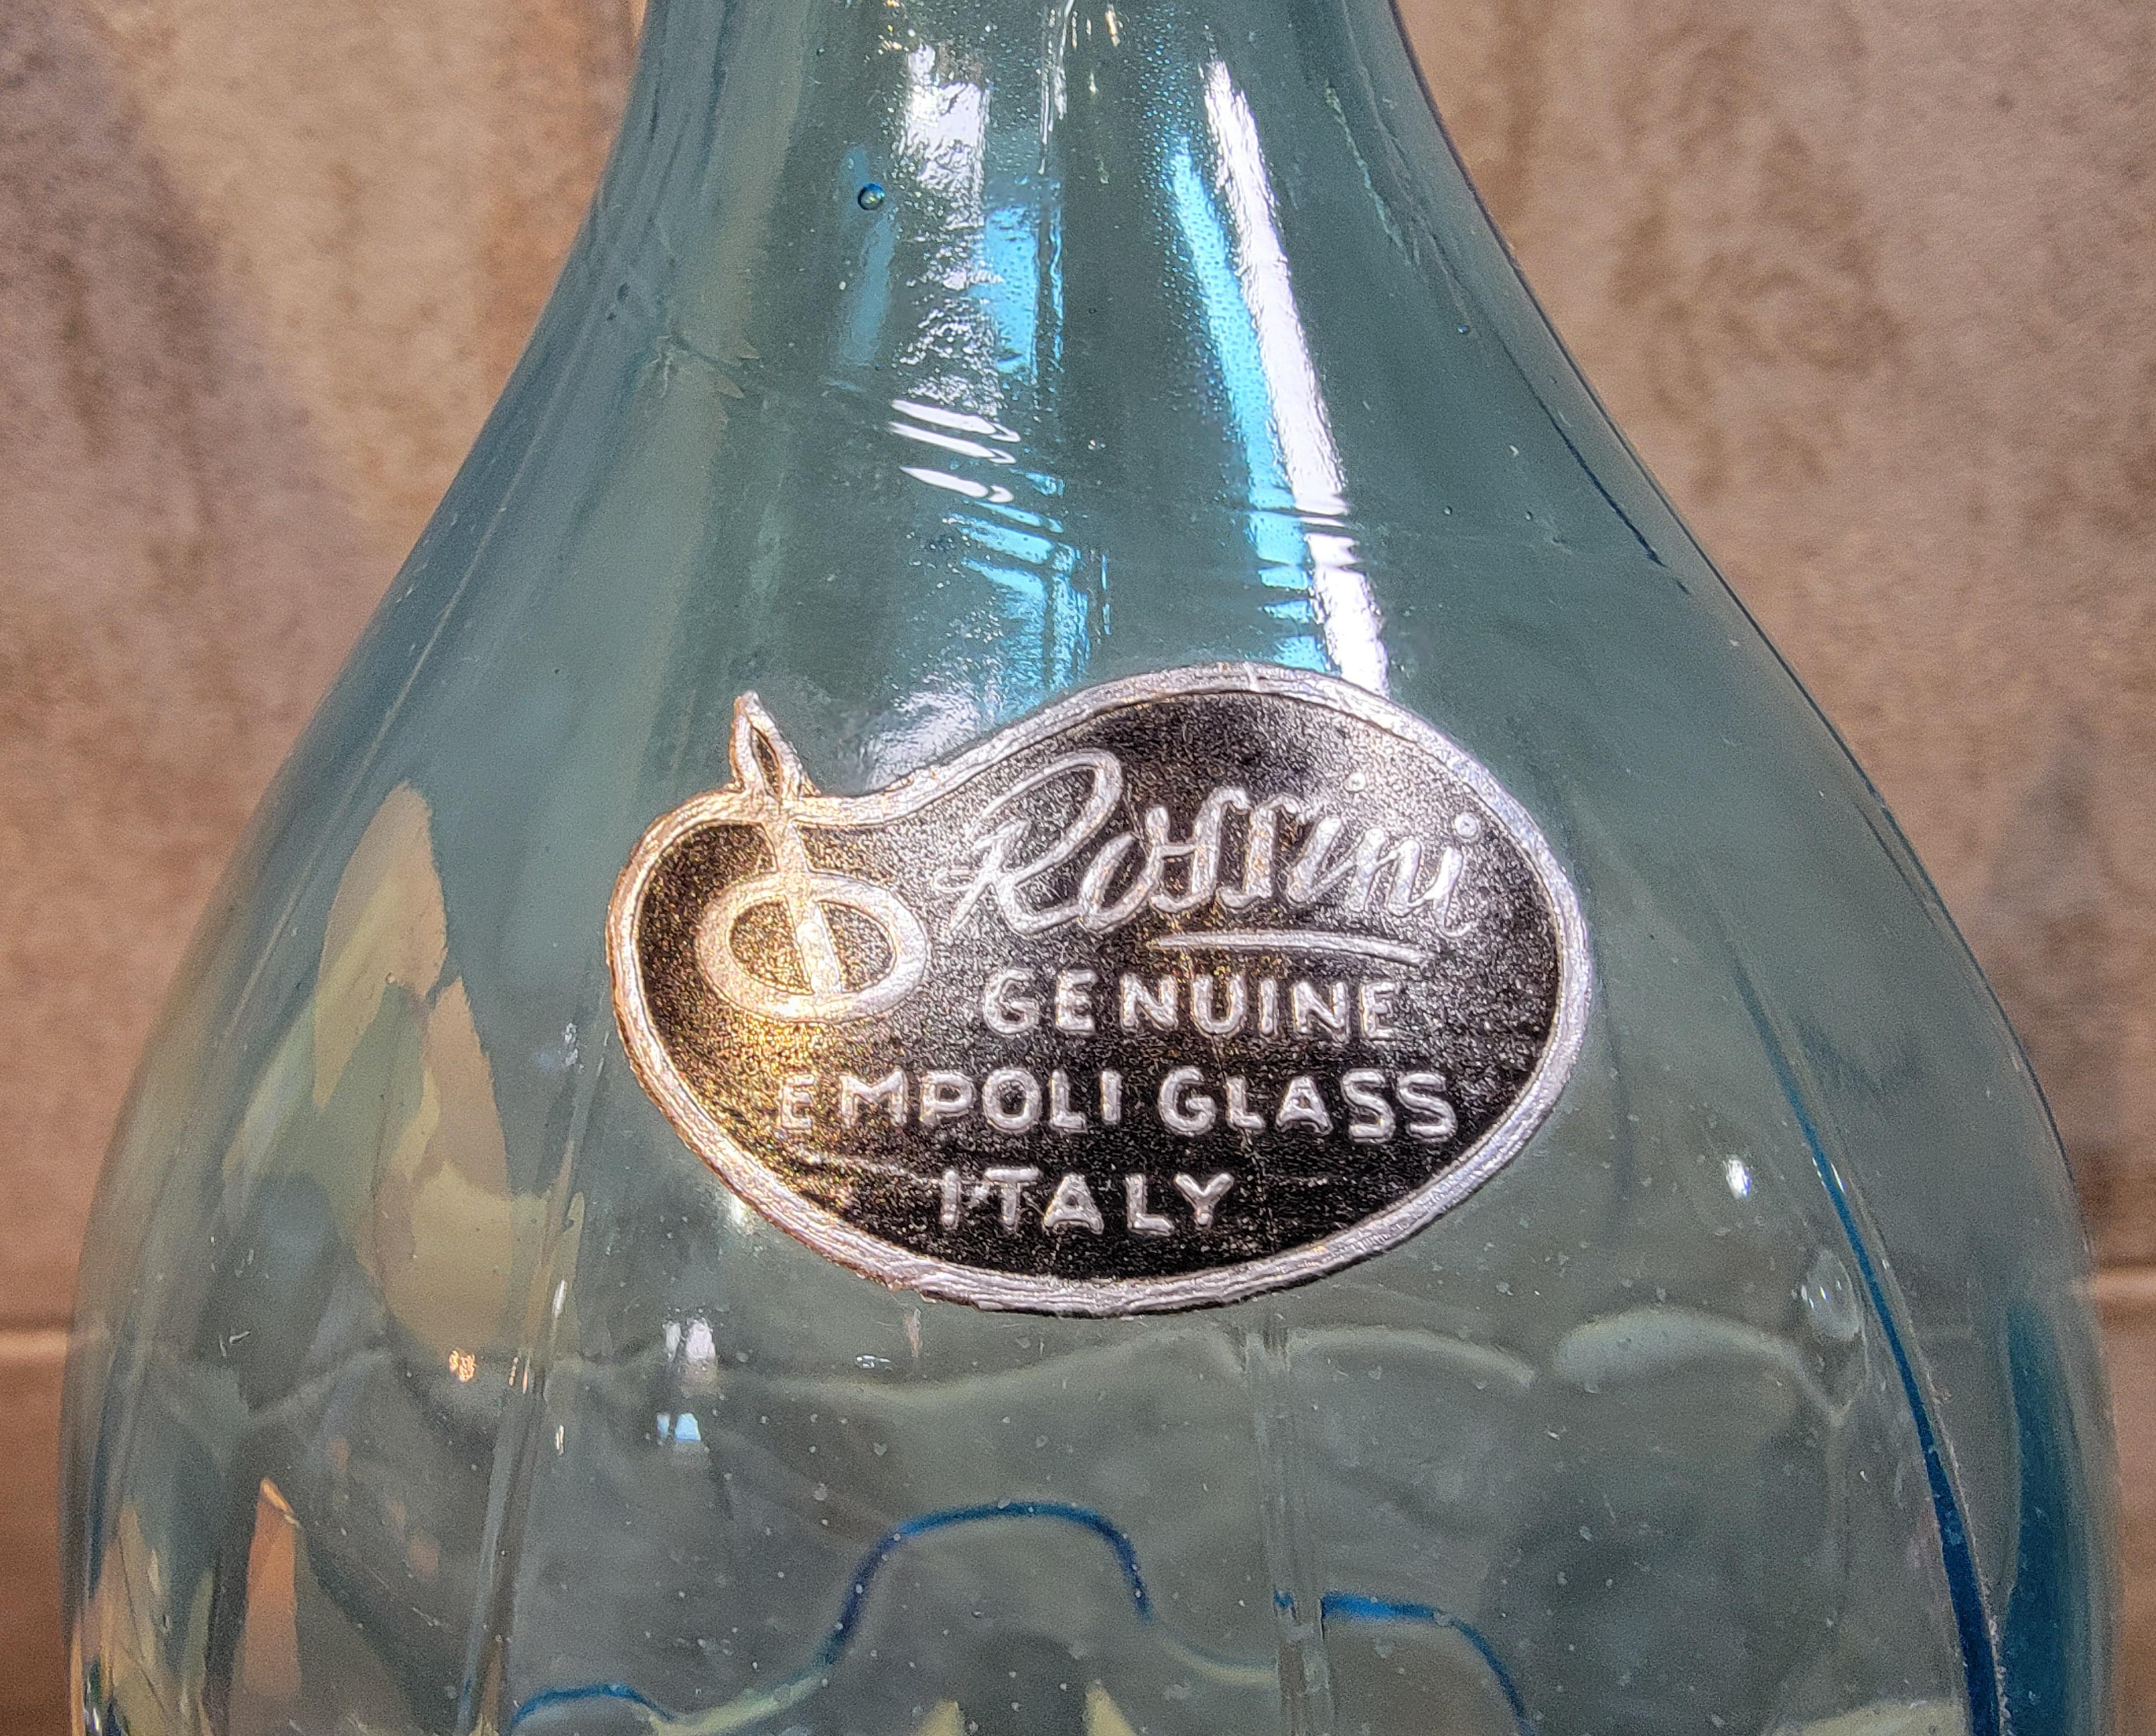 Carafe en verre soufflé bleu glacier avec bouchon d'Empoli Glass, Italie. Conserve l'étiquette en papier 